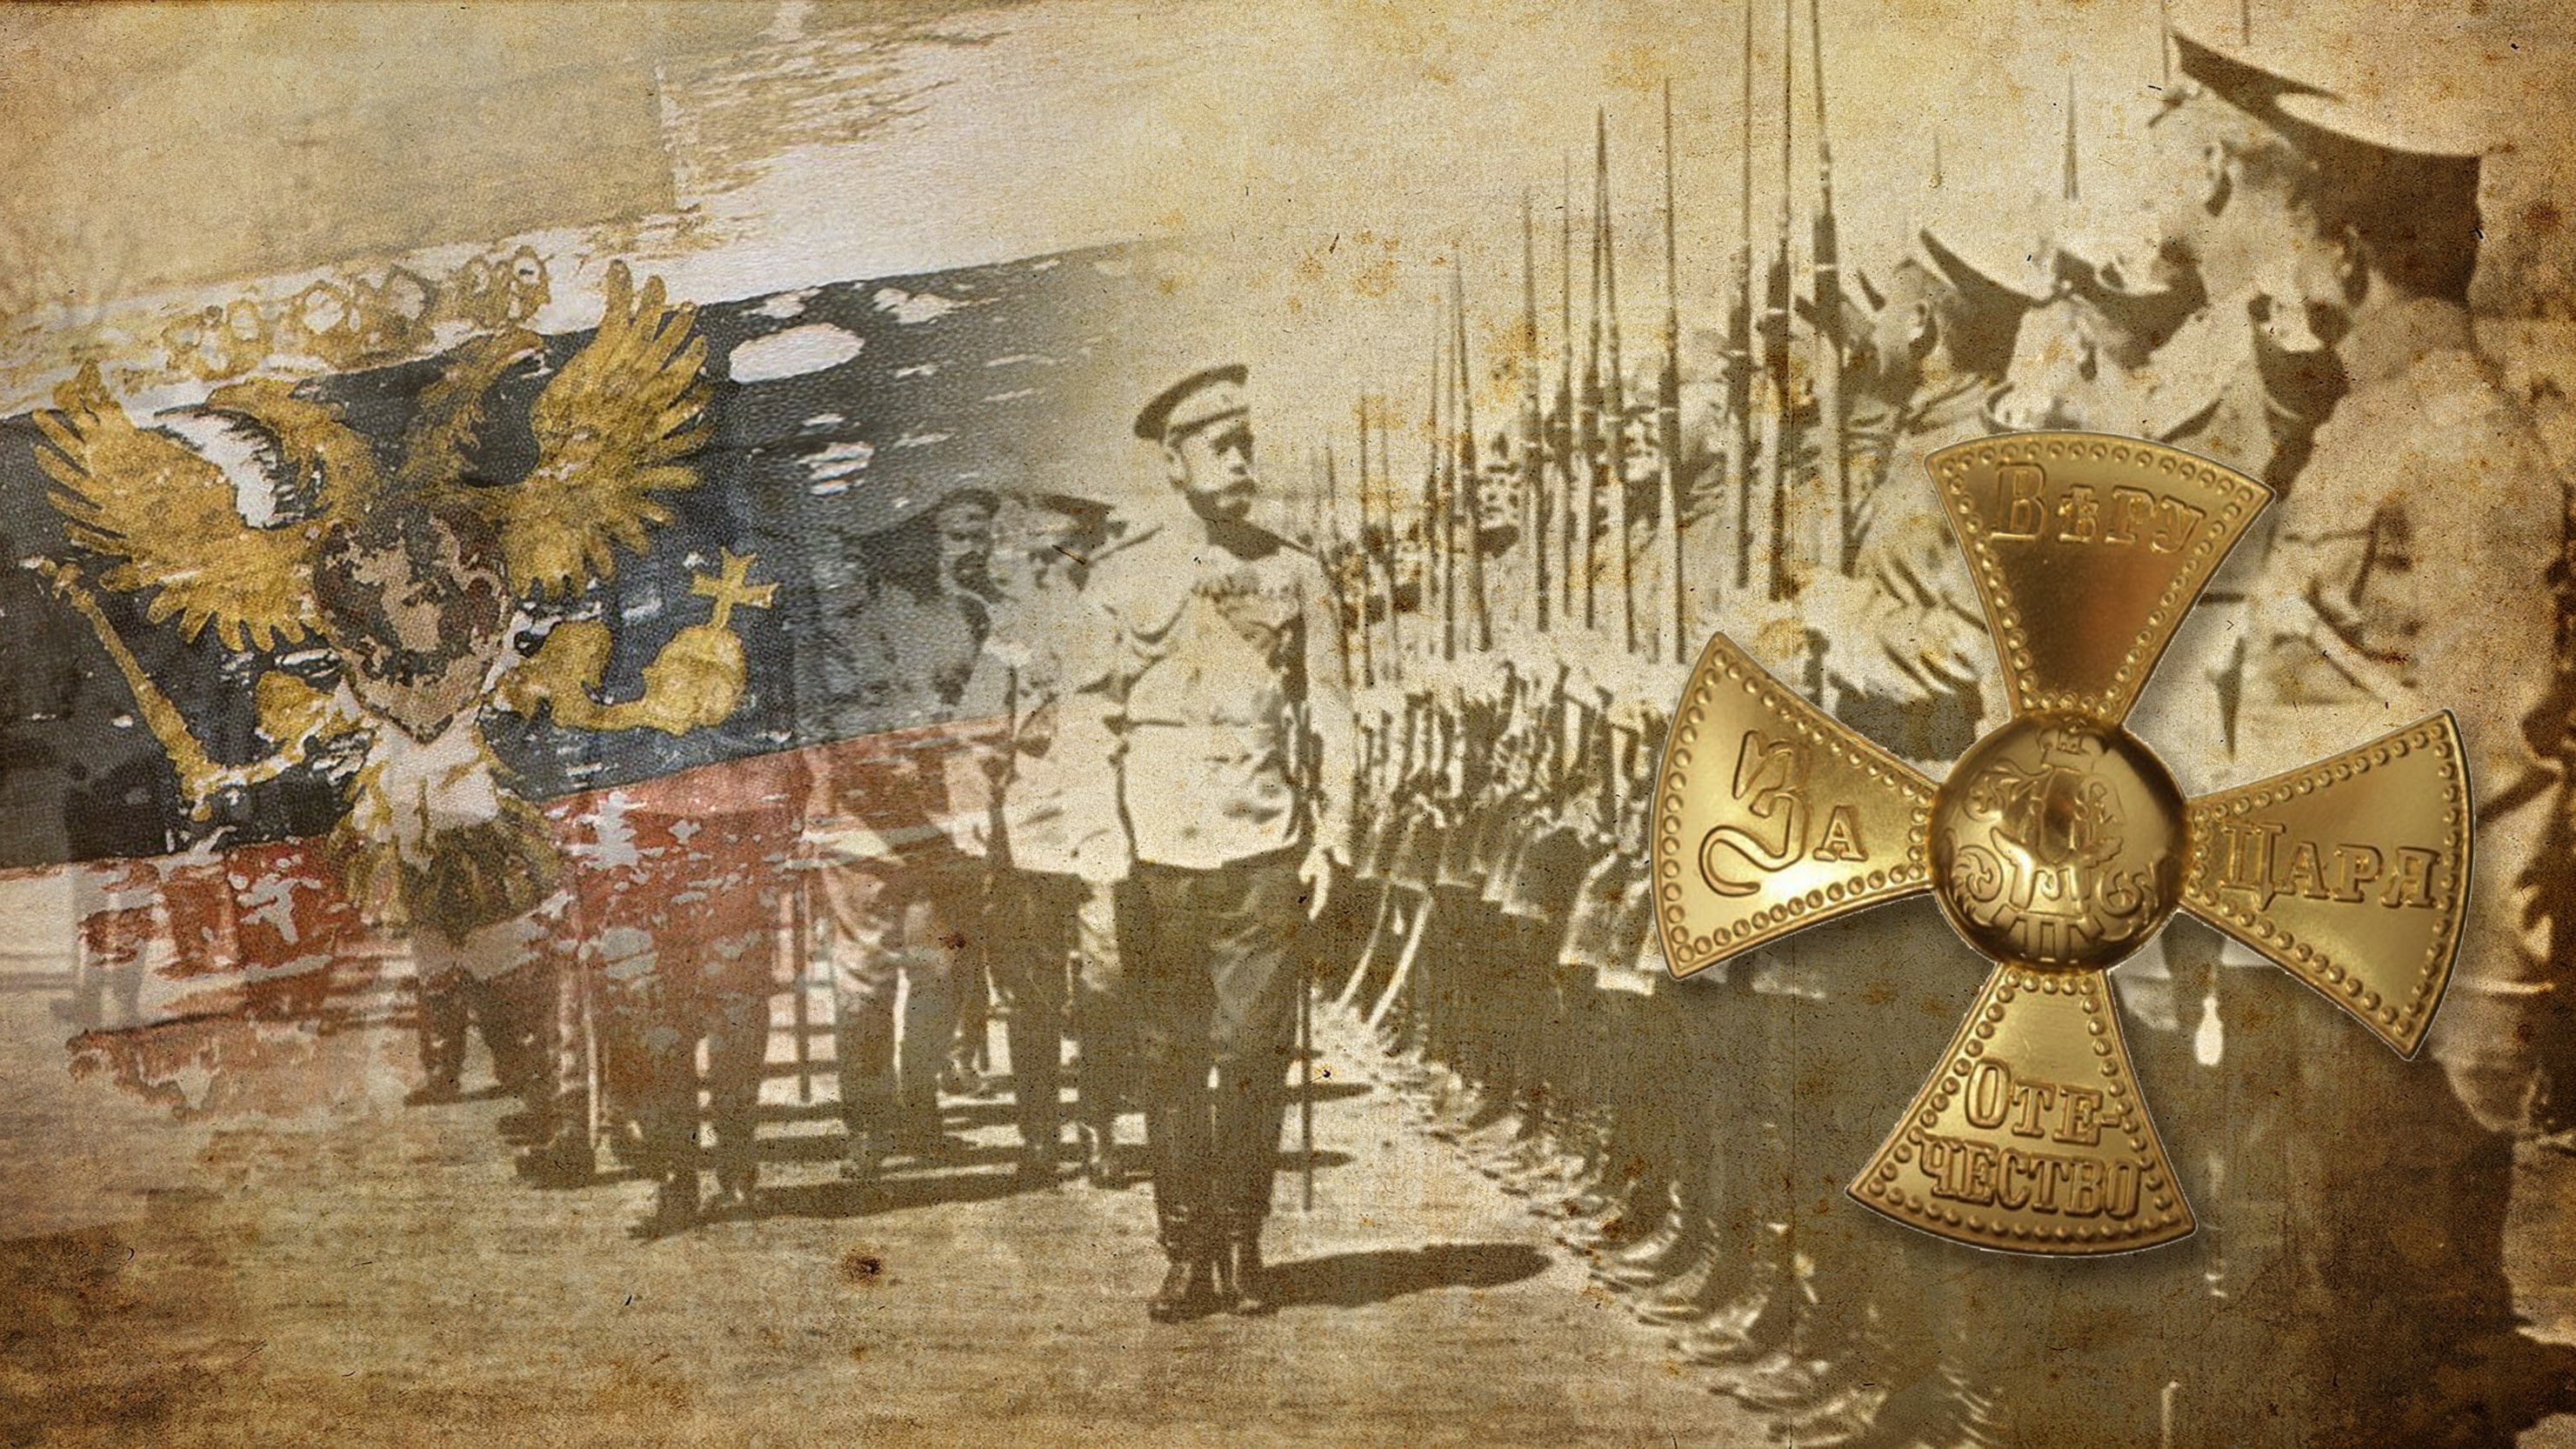 Николай 2 на фоне флага рисунок